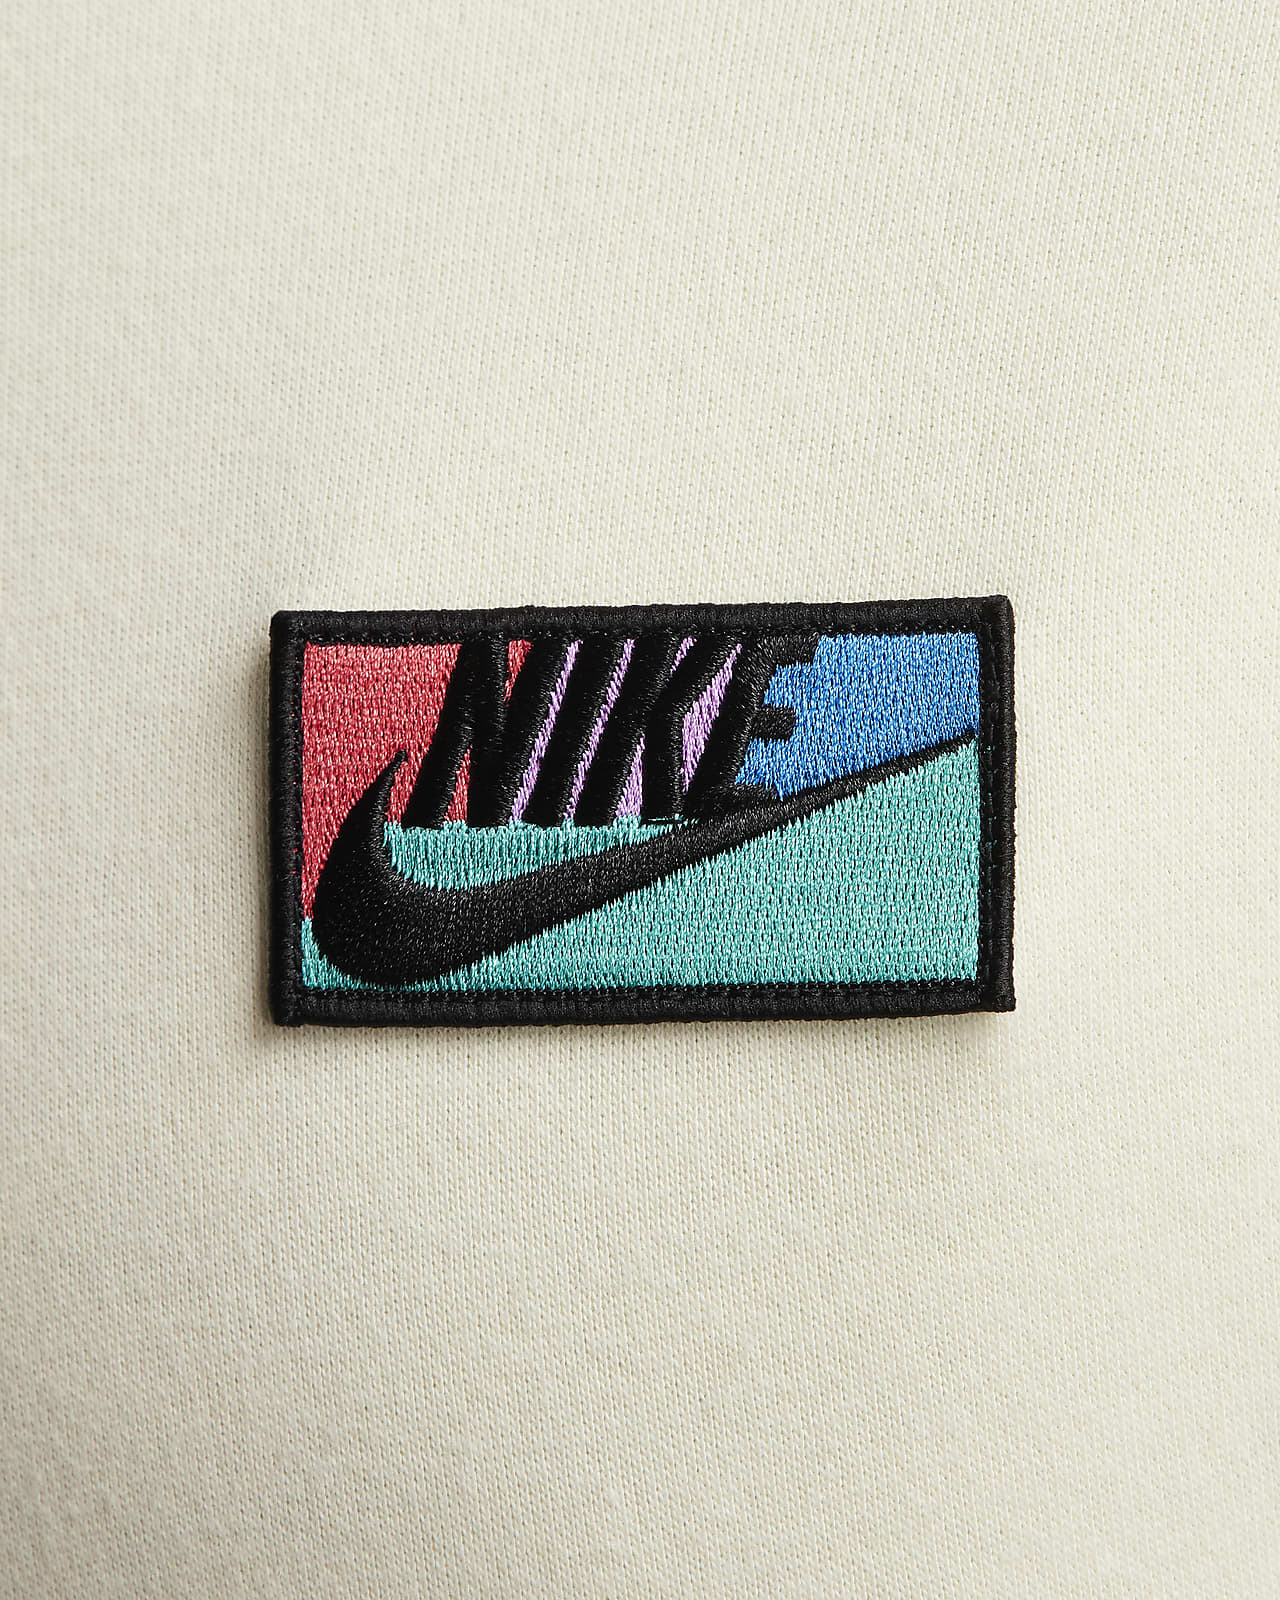 Nike Patches -  Australia